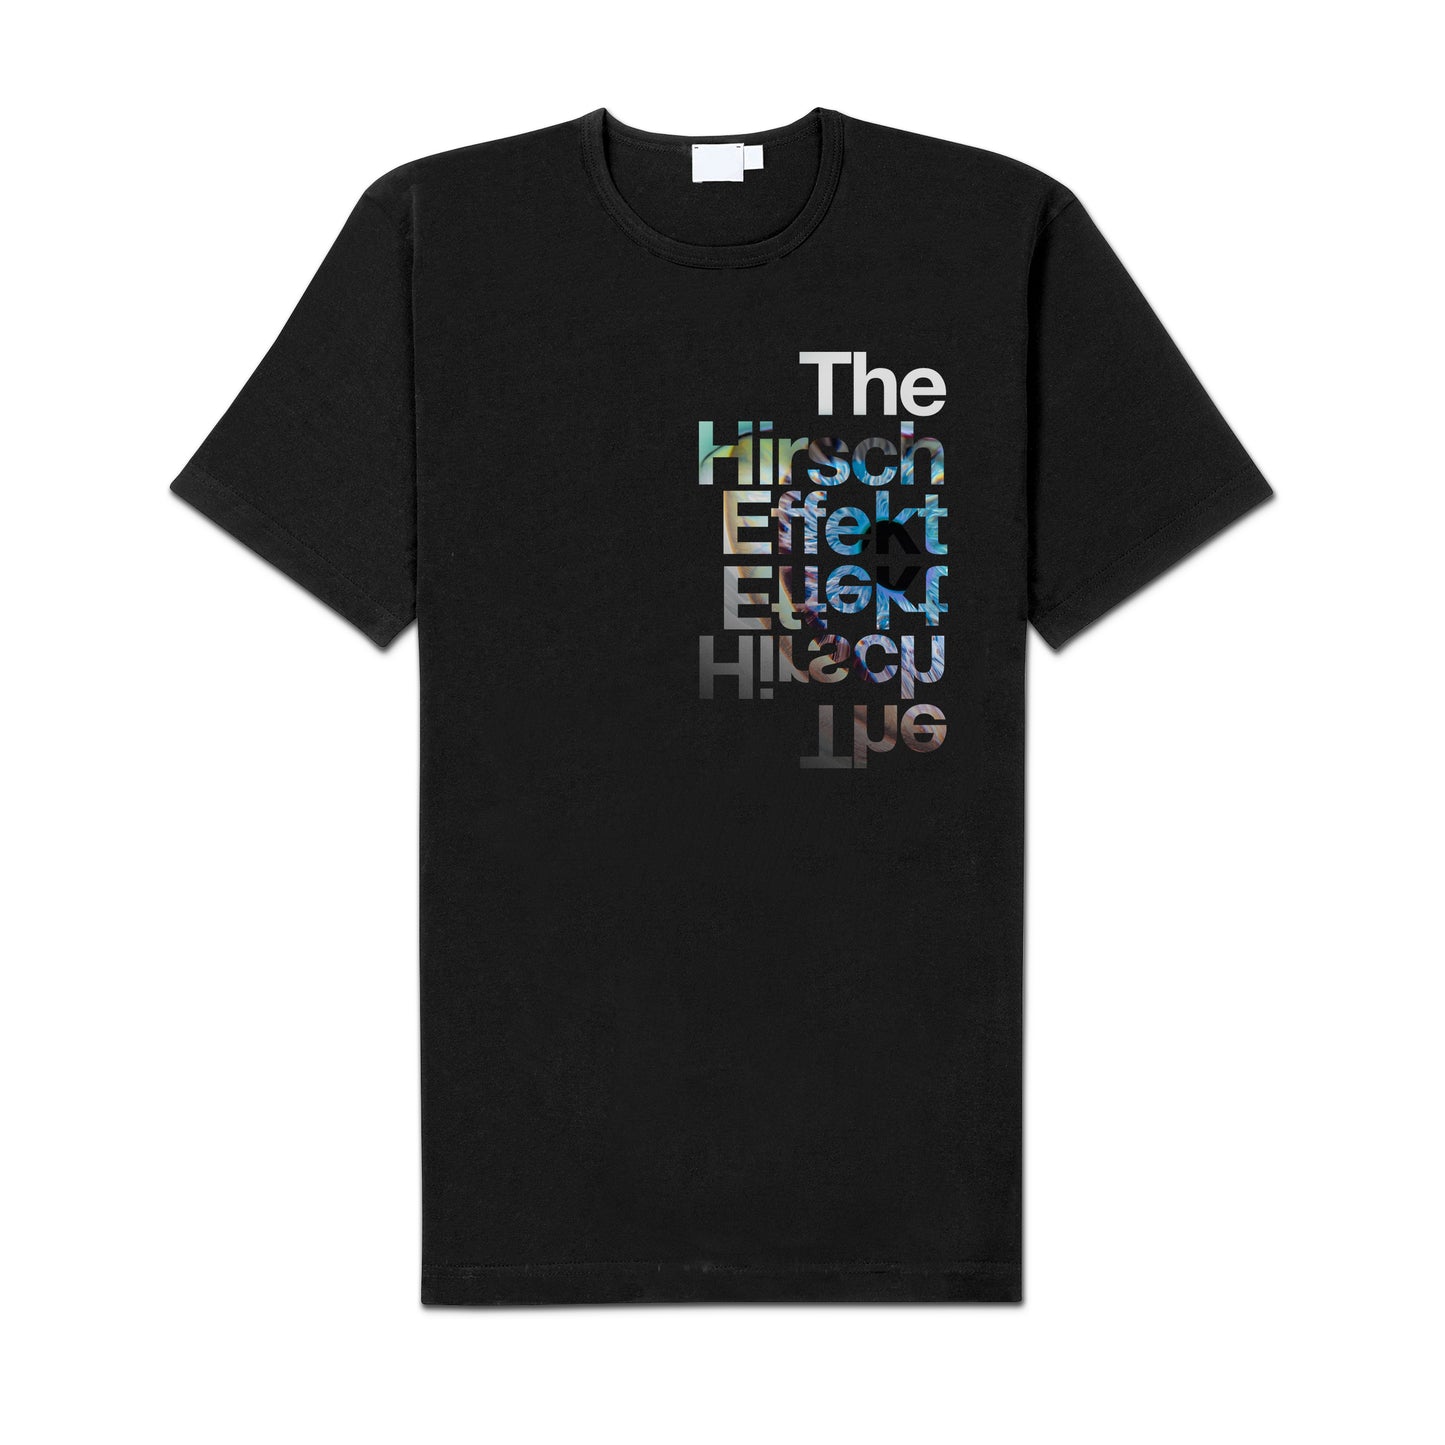 The Hirsch Effekt "Eye" Shirt